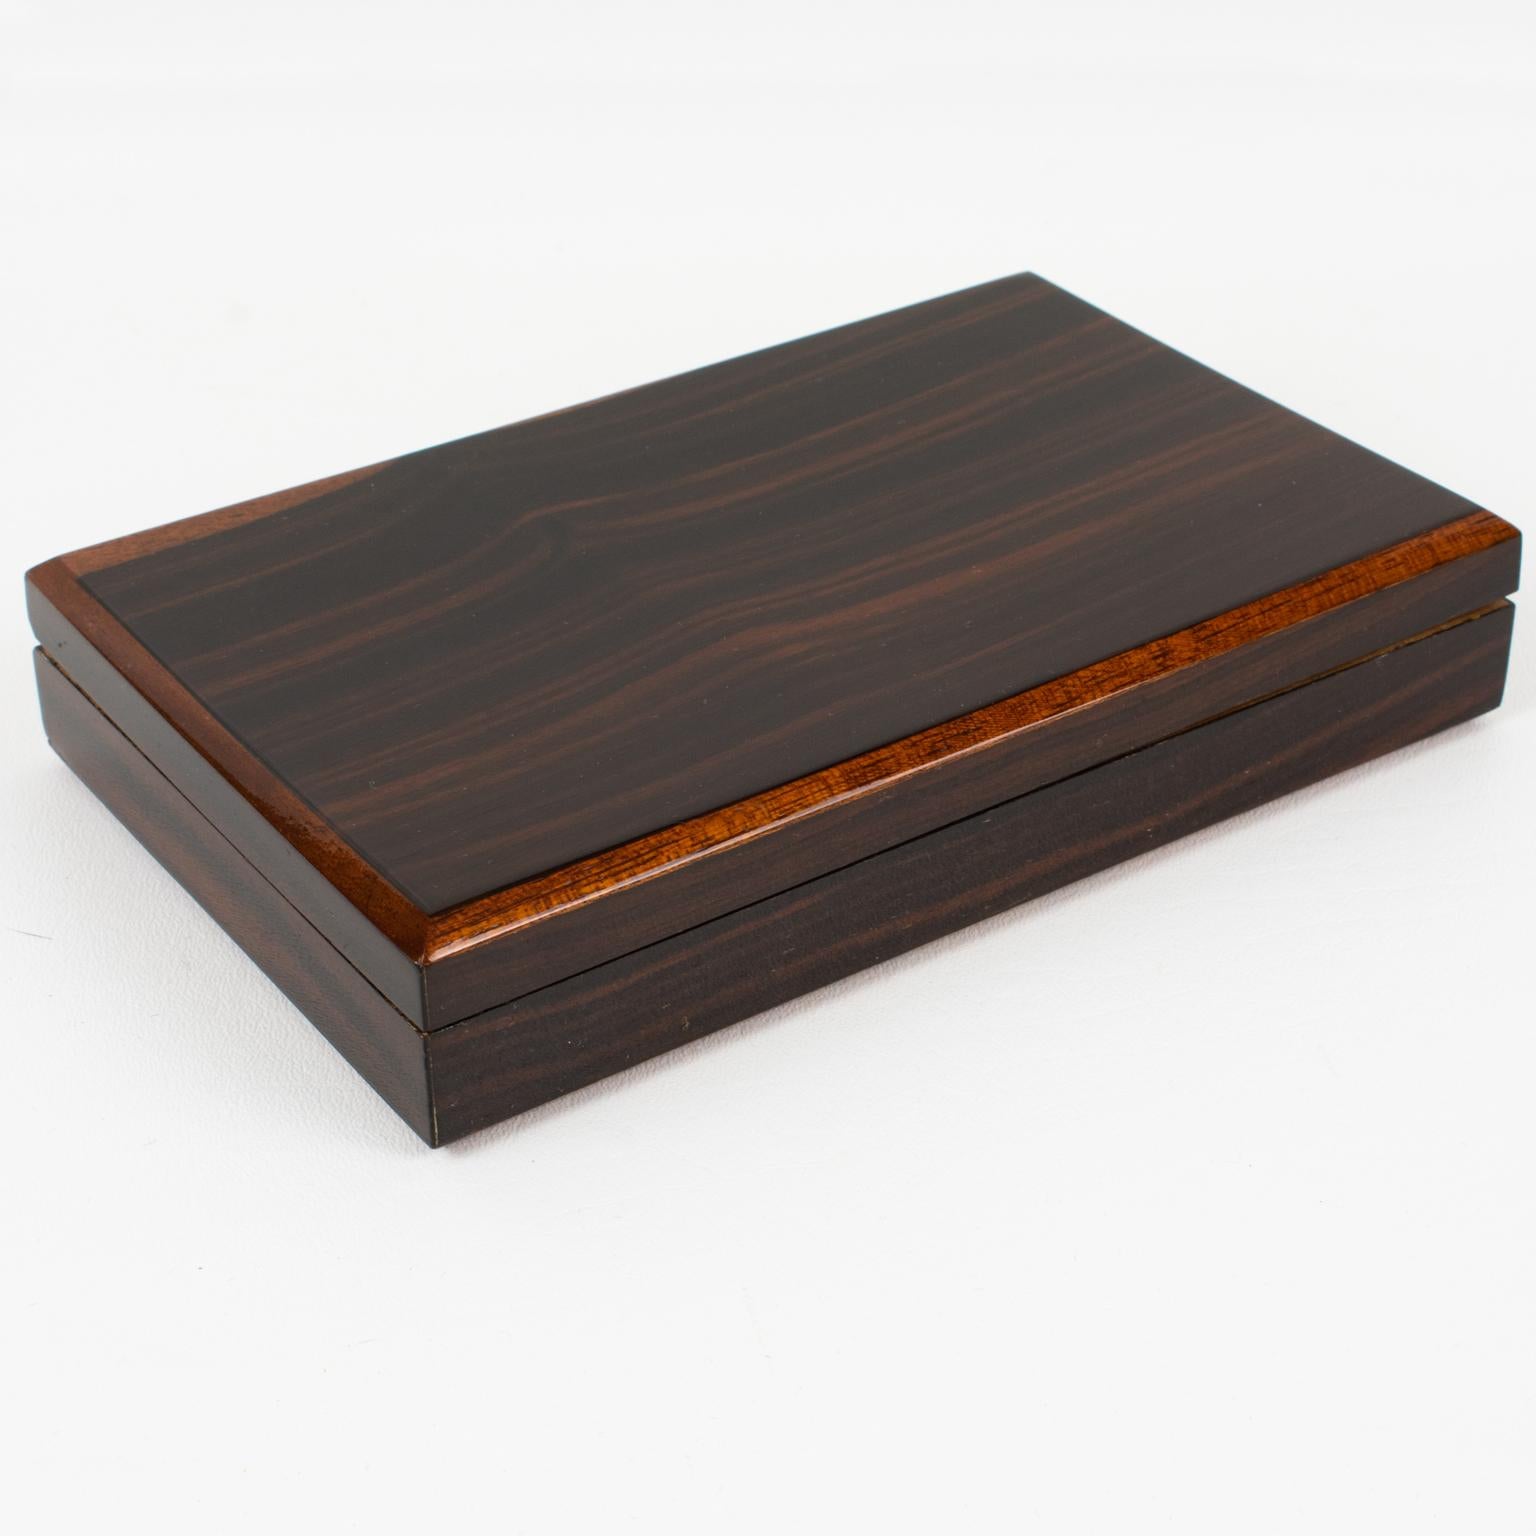 Diese elegante französische Art-Déco-Dose mit Deckel hat eine minimalistische, aber raffinierte Form und ist mit lackiertem Makassarholz und tropischen Holzkanten verziert. Das Innere des Objekts ist mit Tropenholz ausgeschmückt. Es gibt keine